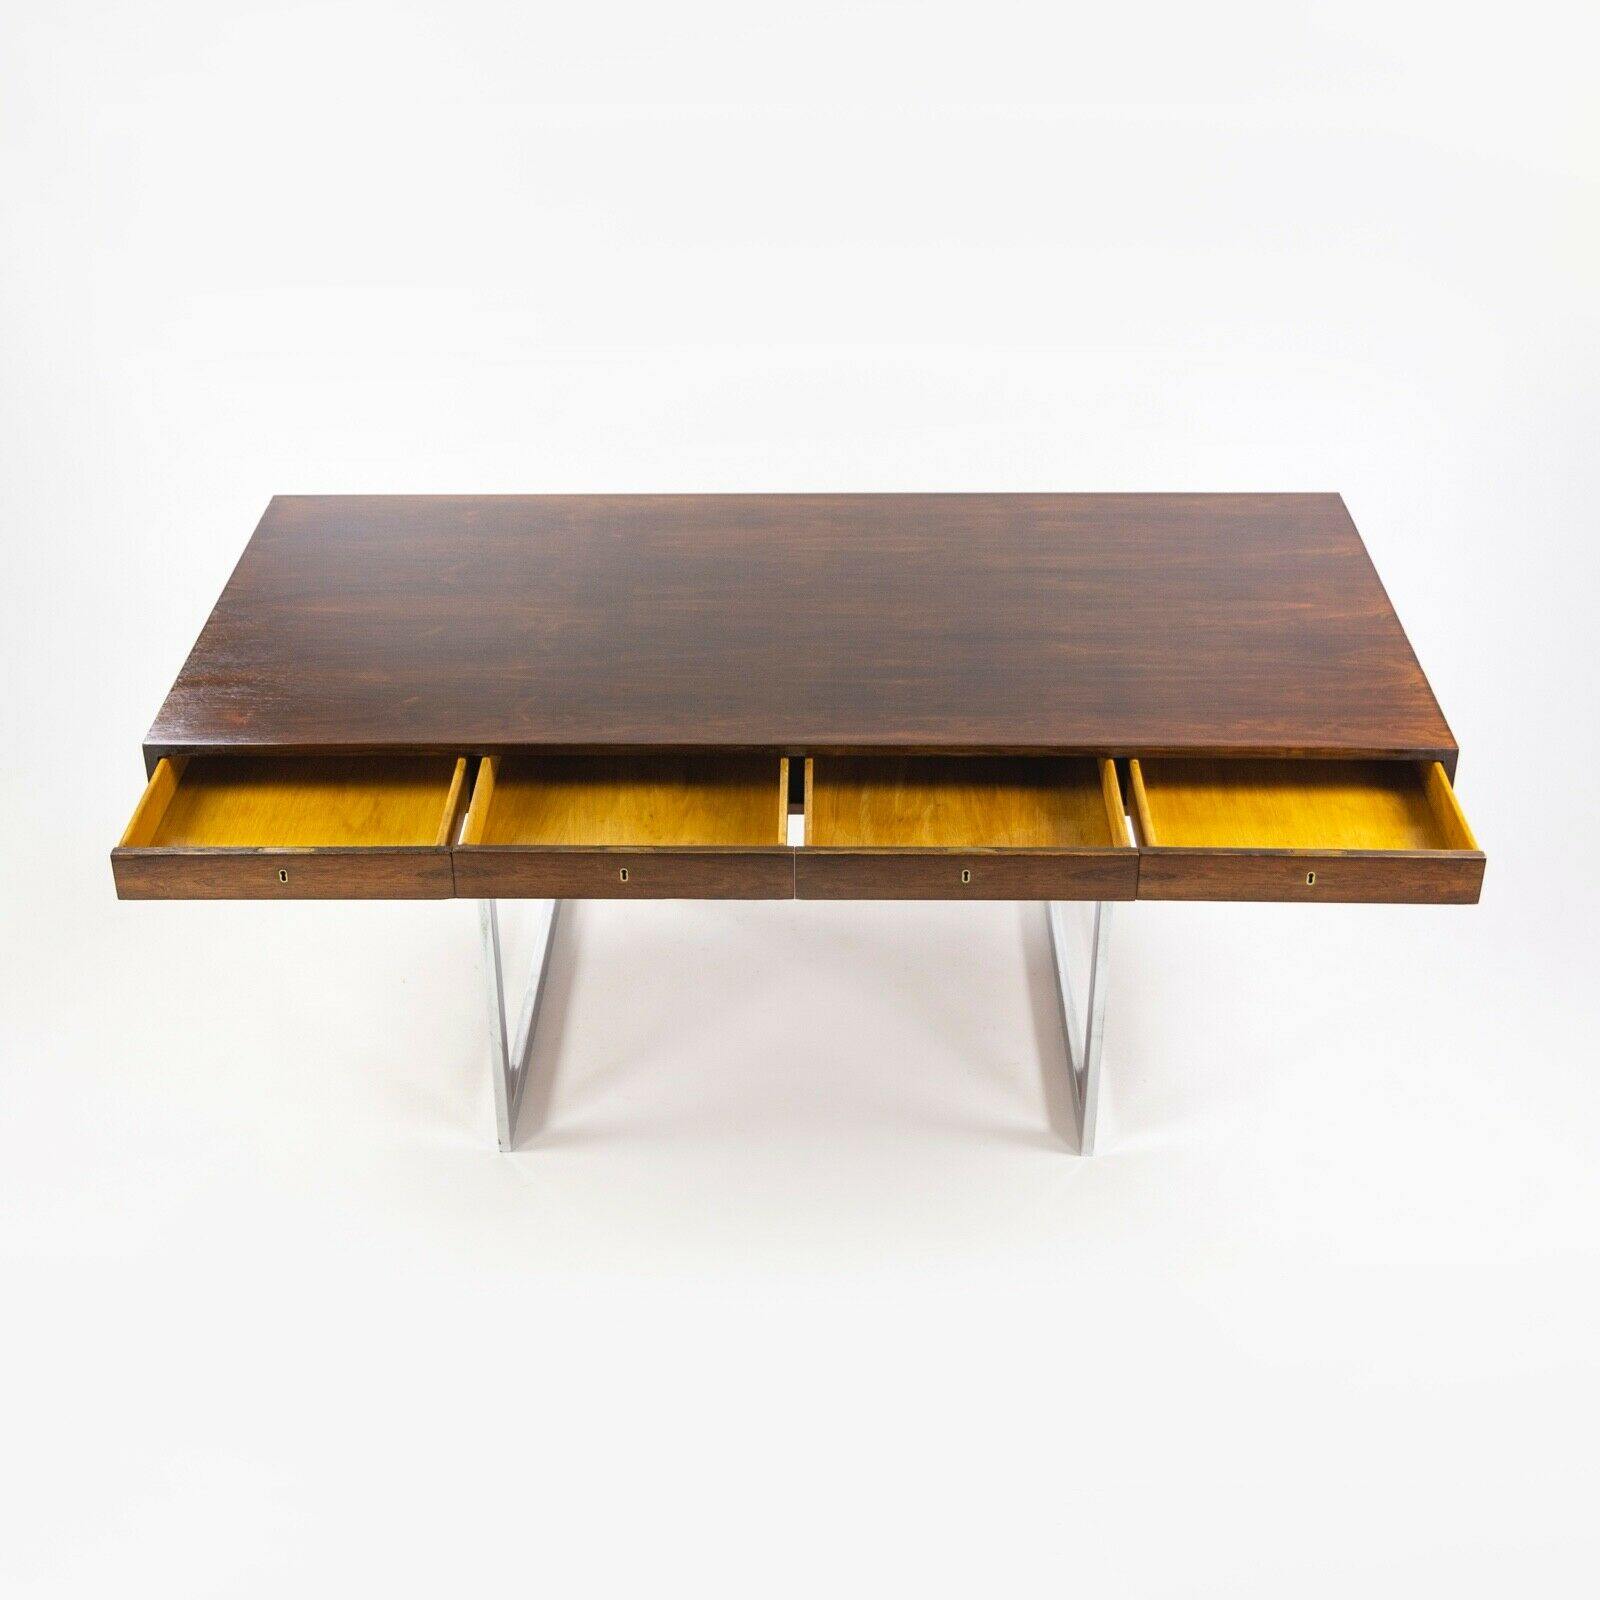 1959 4-Drawer Bodil Kjaer Desk for E. Pedersen and Son Brazilian Rosewood Made in Denmark - Rarify Inc.